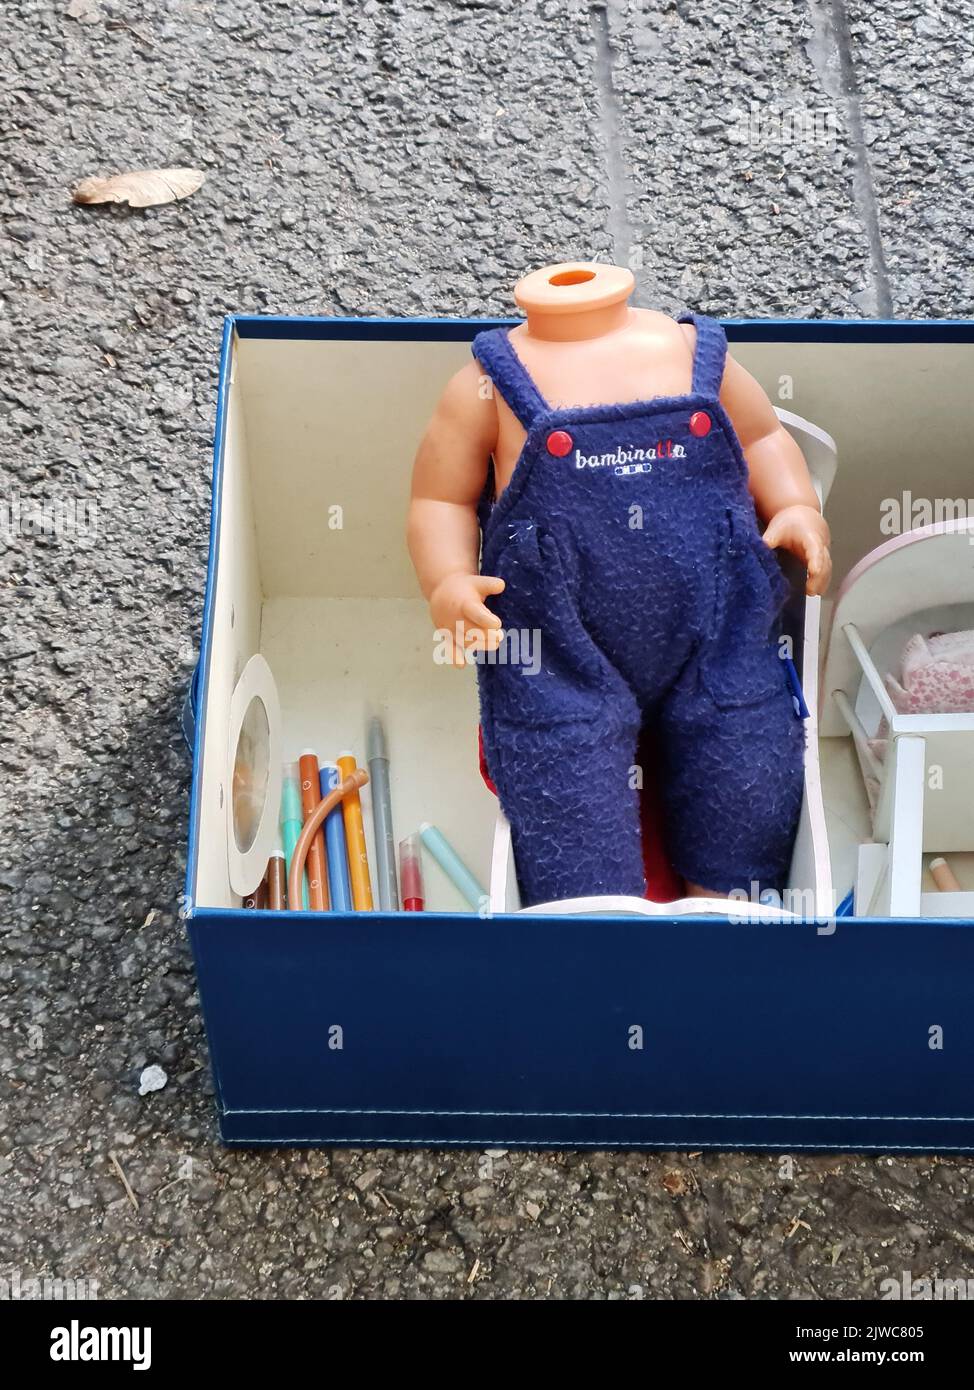 Bambola senza testa in una scatola. Foto Stock